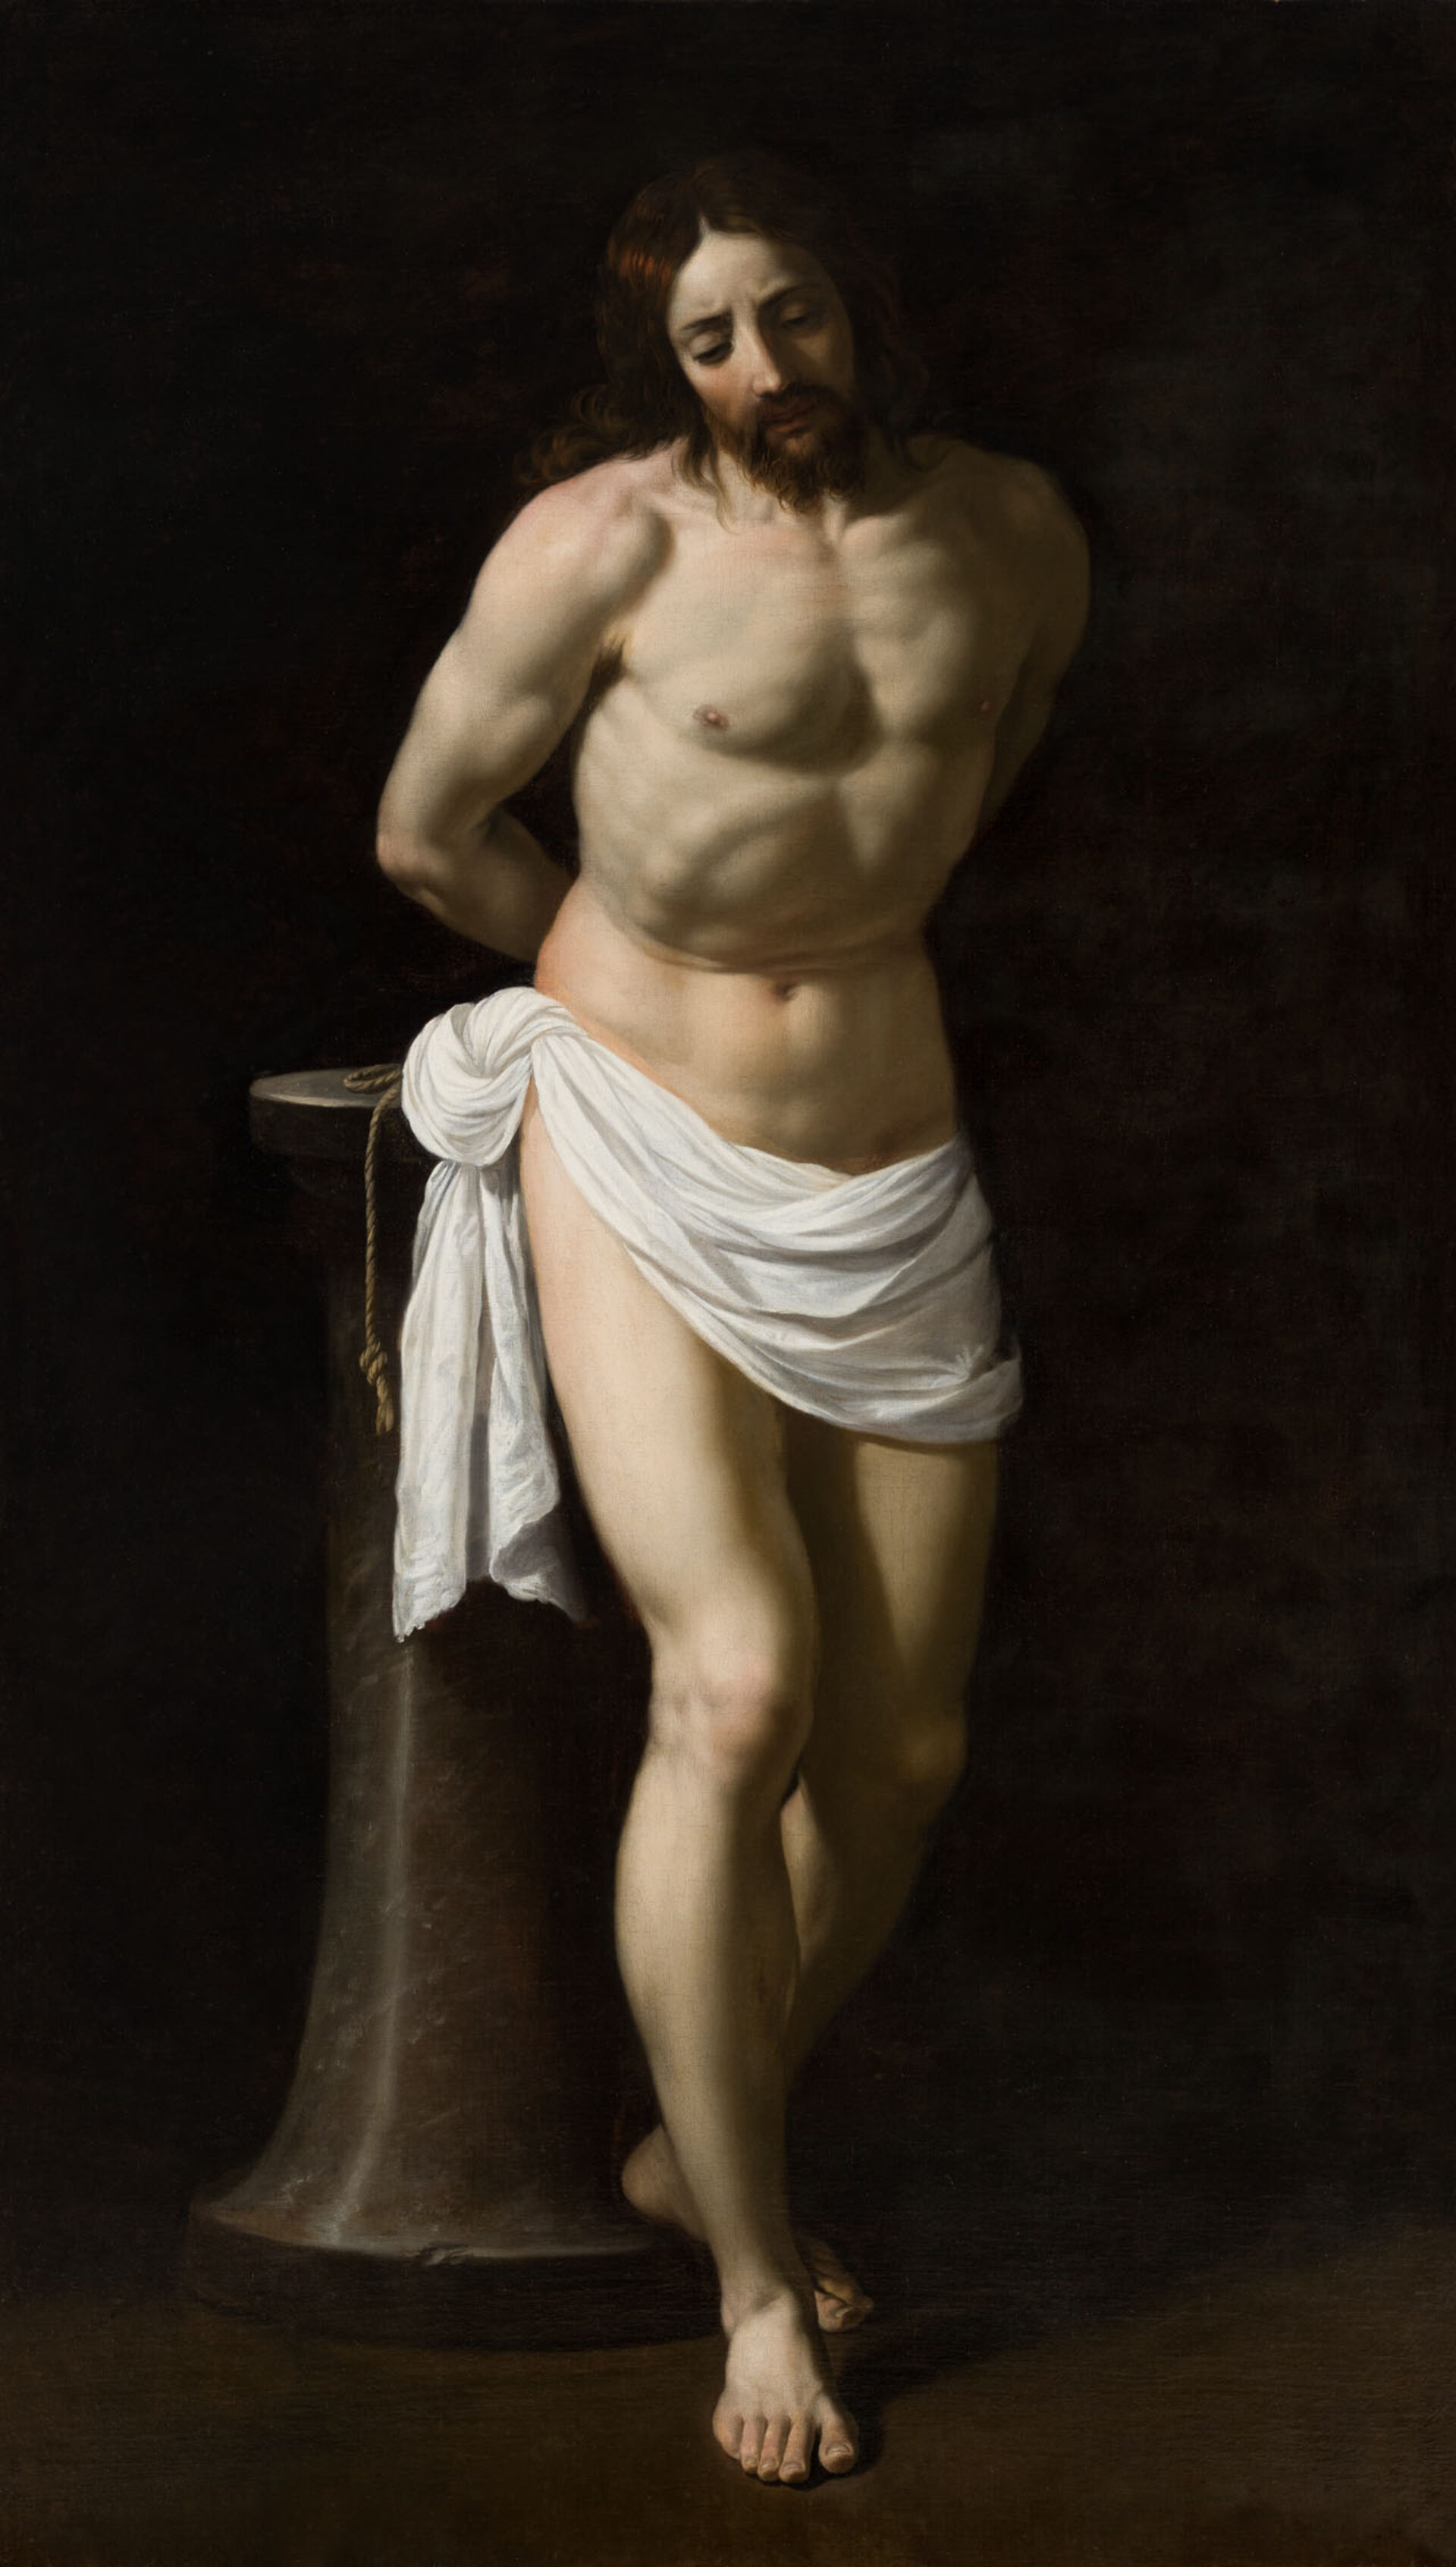 Abb. 10 Guido Reni, Christus an der Geißelsäule, um 1604, Öl auf Leinwand, 192,7 x 114,9 x 4,5 cm, Städel Museum Frankfurt, erworben 1875